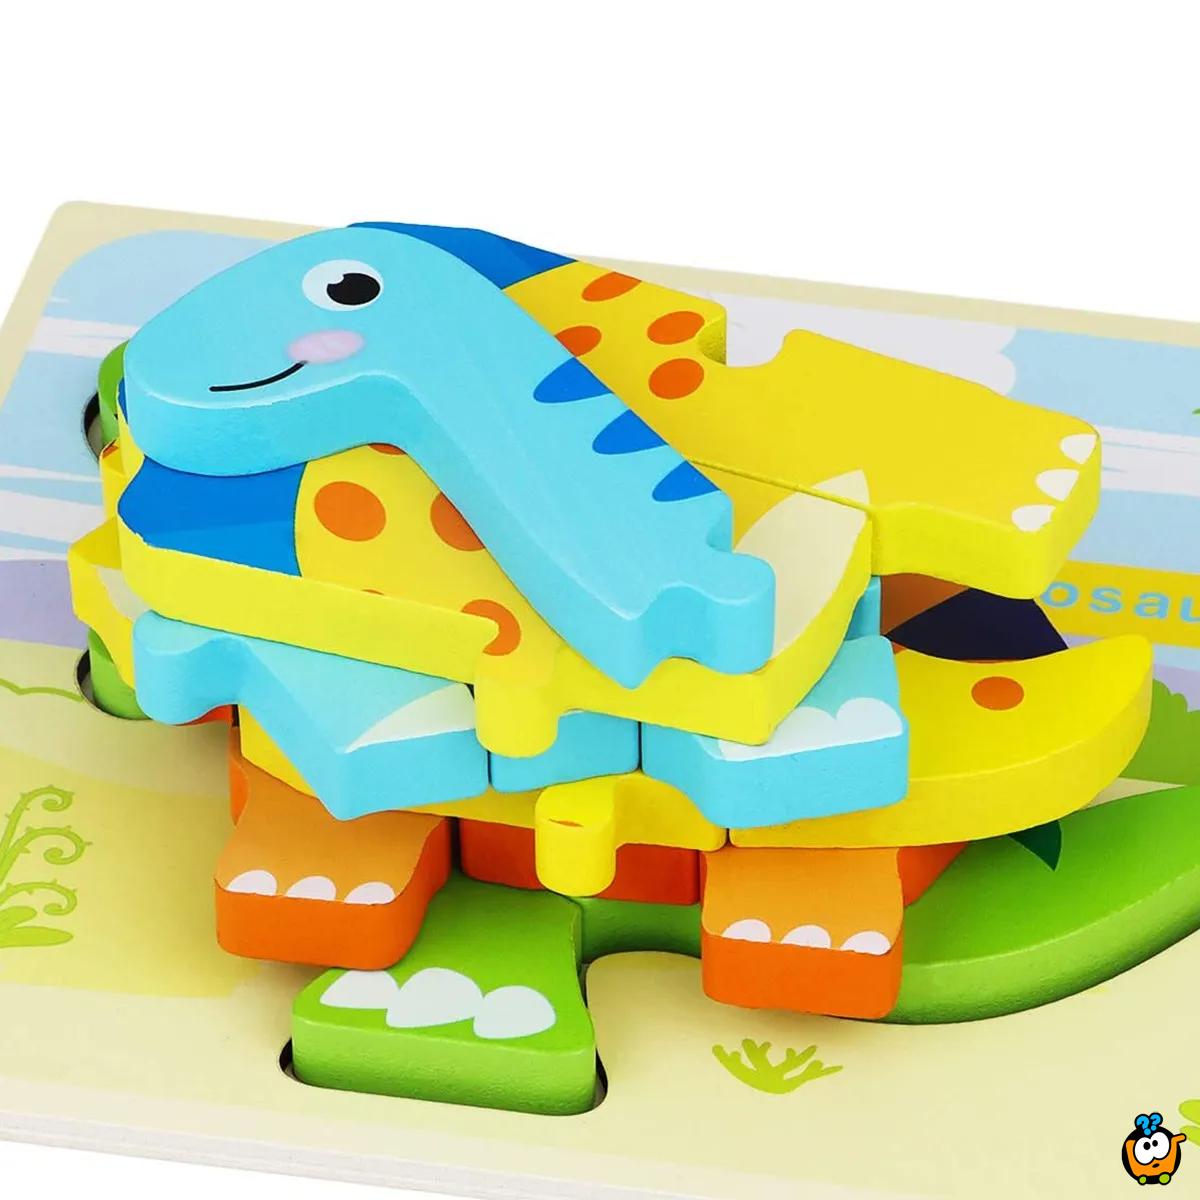 3D Dino kreativne drvene puzle razigranih motiva i boja